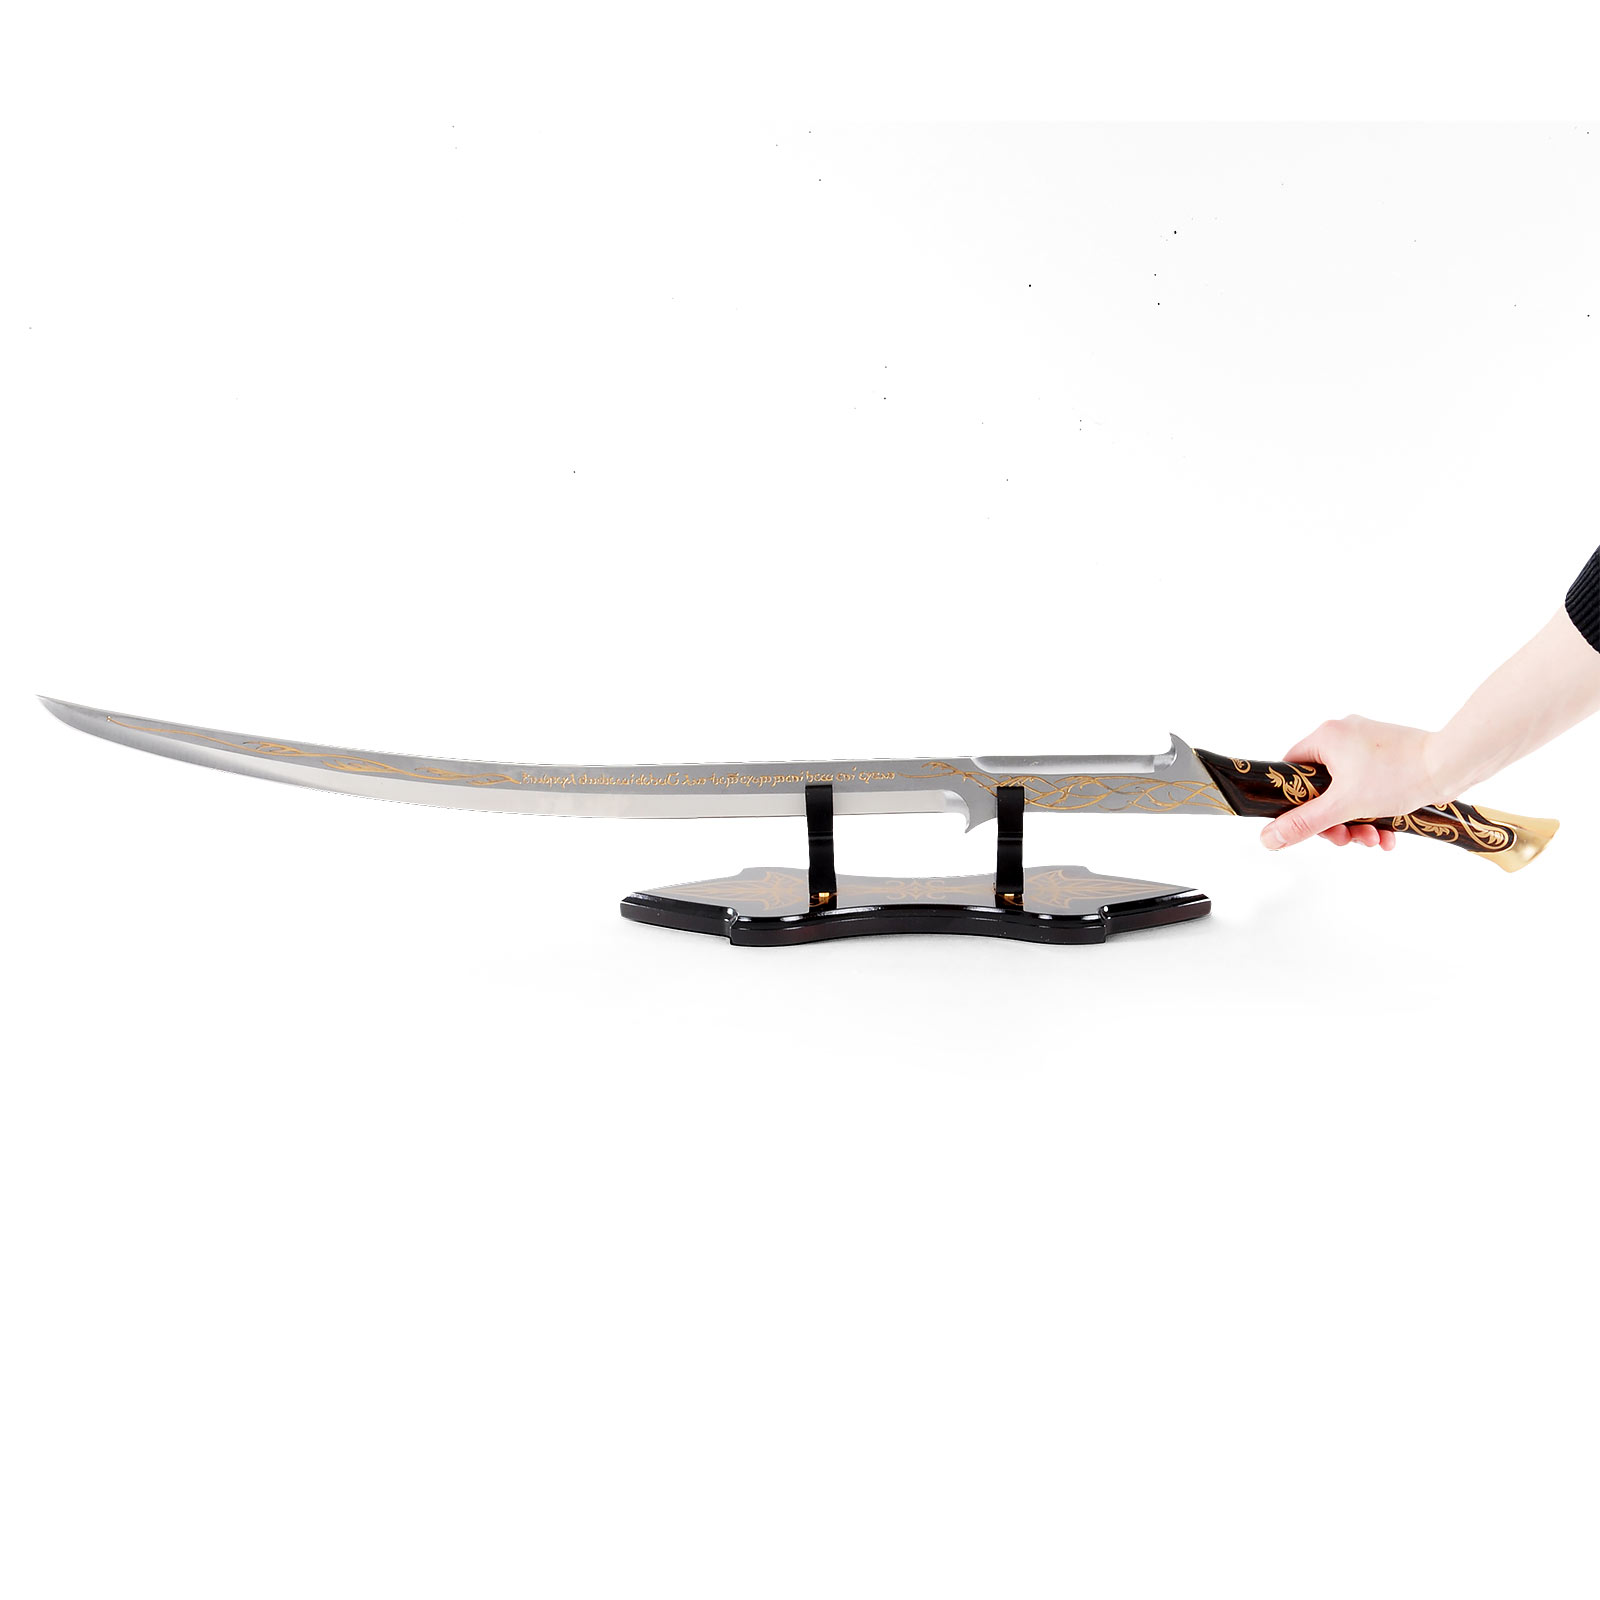 Sword Hadhafang - Arwen's Sword